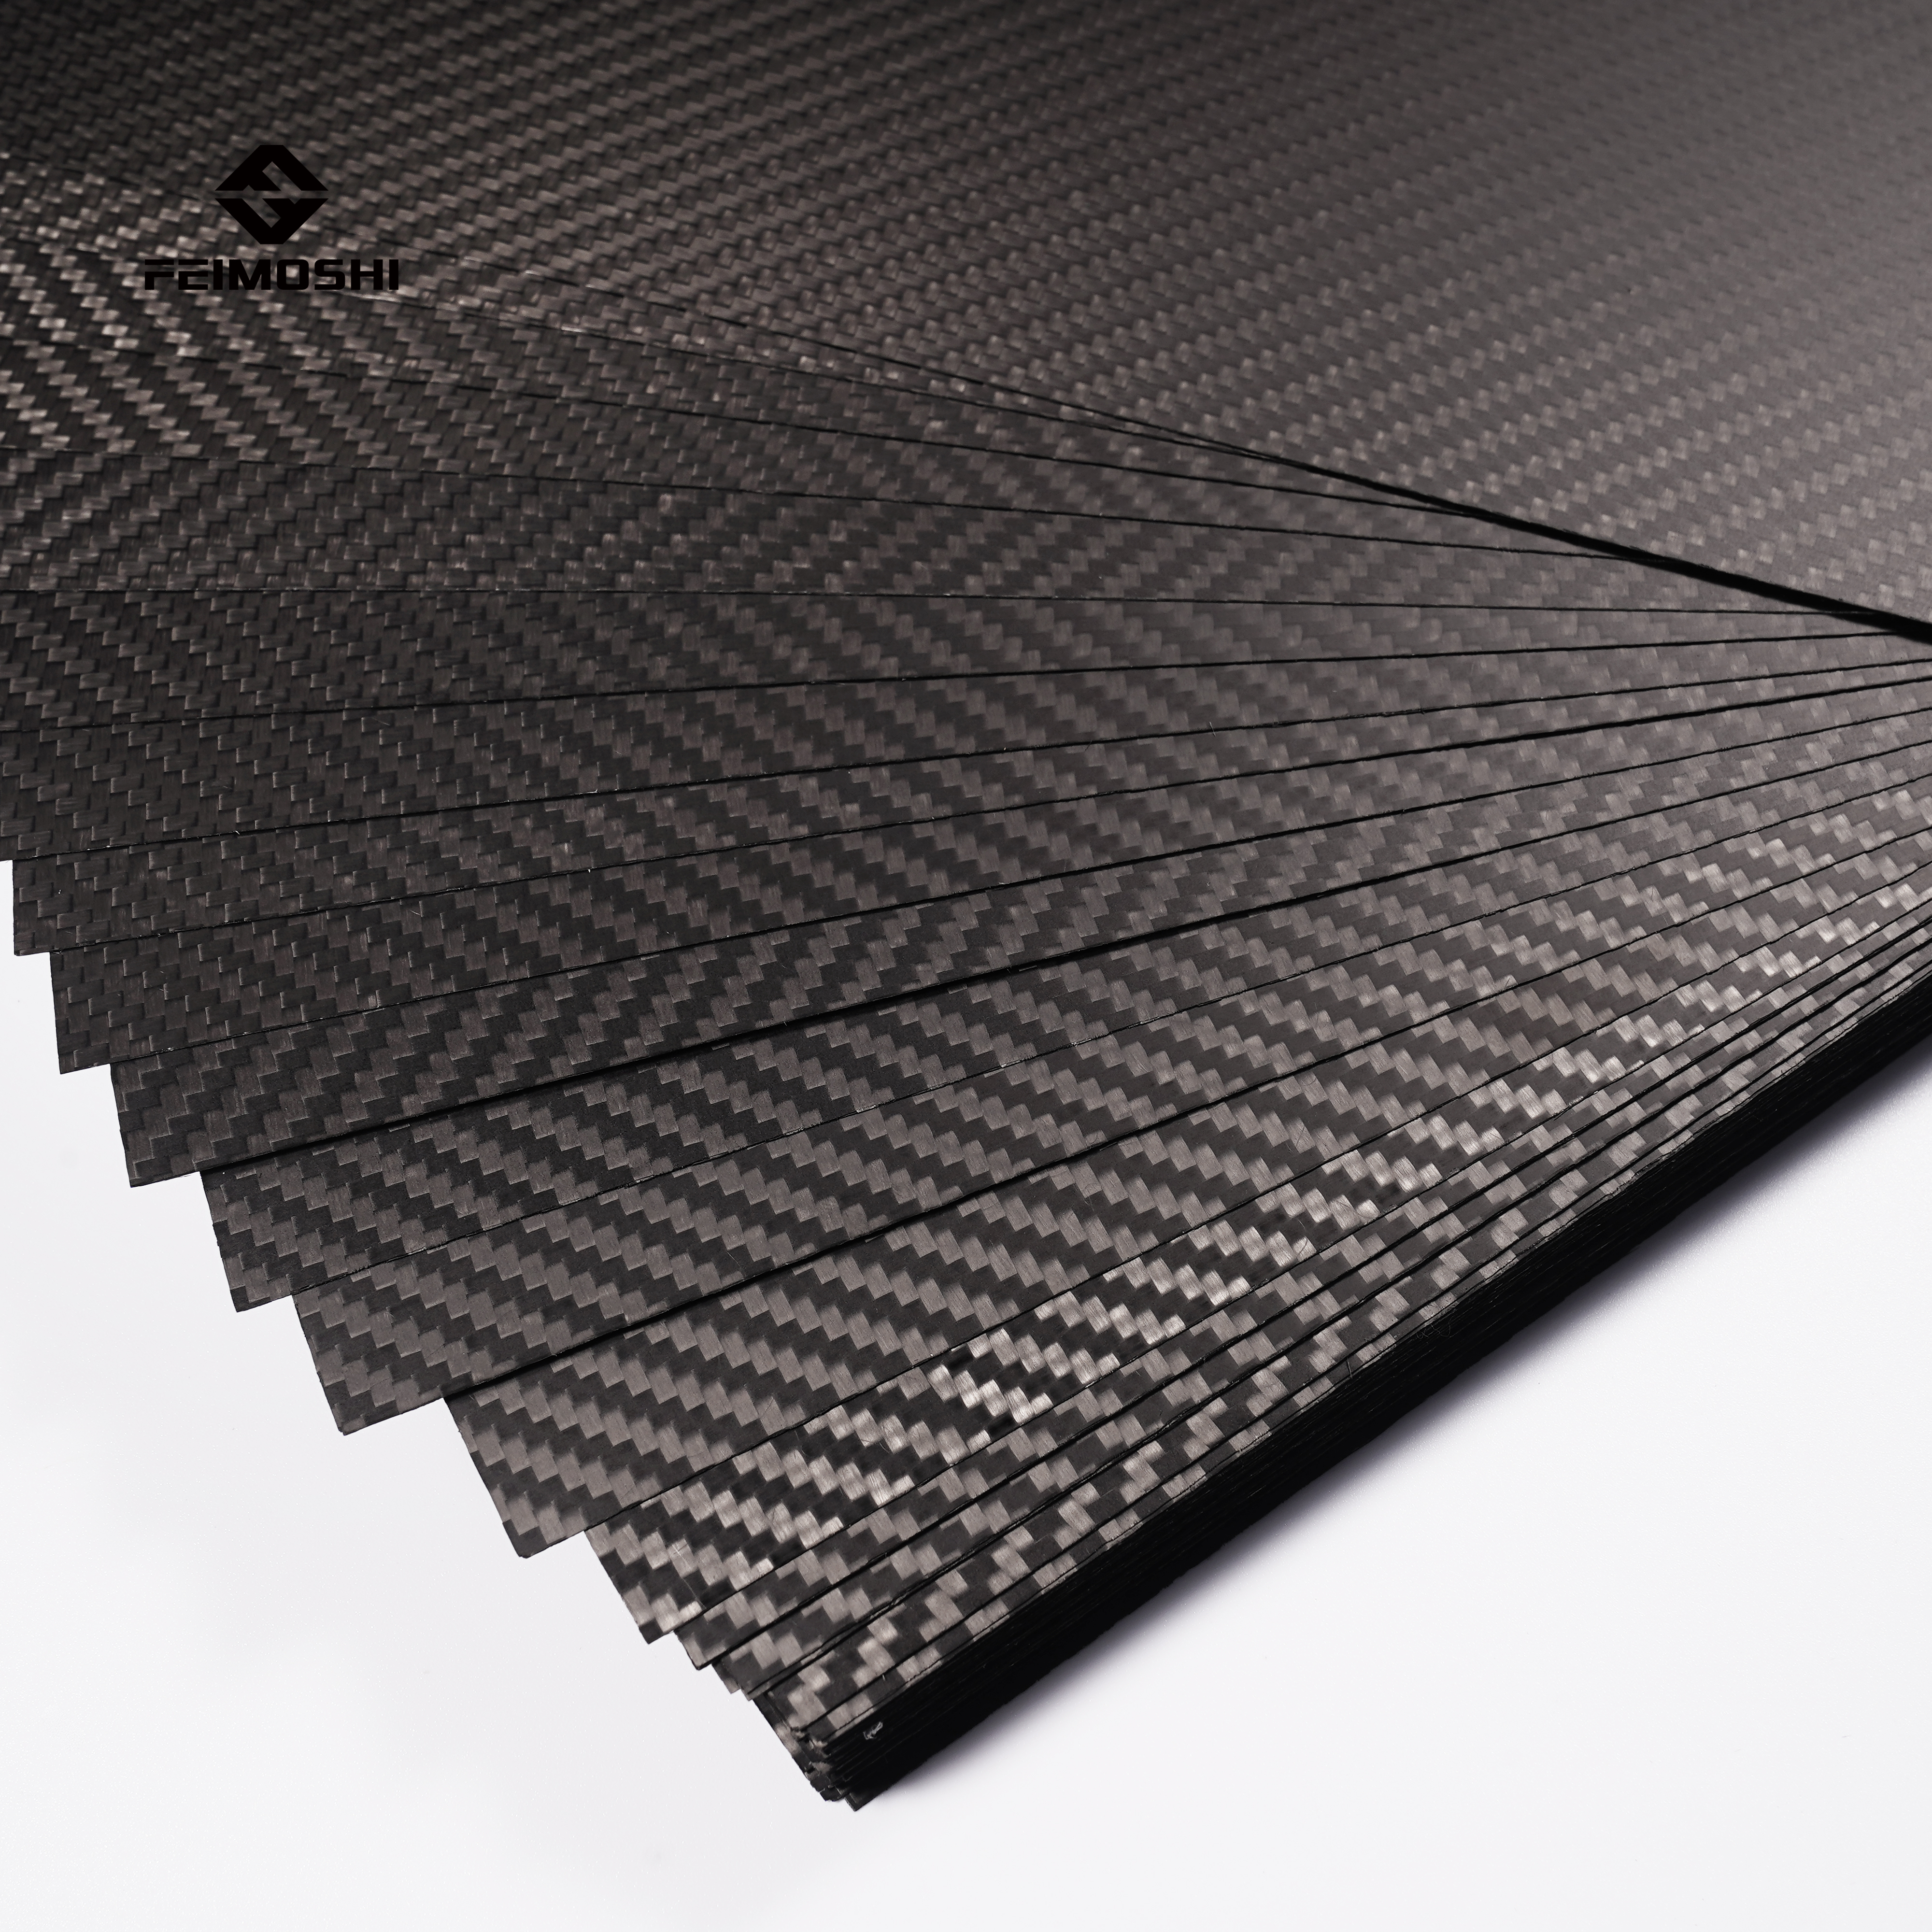 2021 China New Design 3k Carbon Fiber Sheet - Custom 1K 3K 12K twill/plain Glossy/Matte full carbon fiber sheet panel for RC cars – Feimoshi